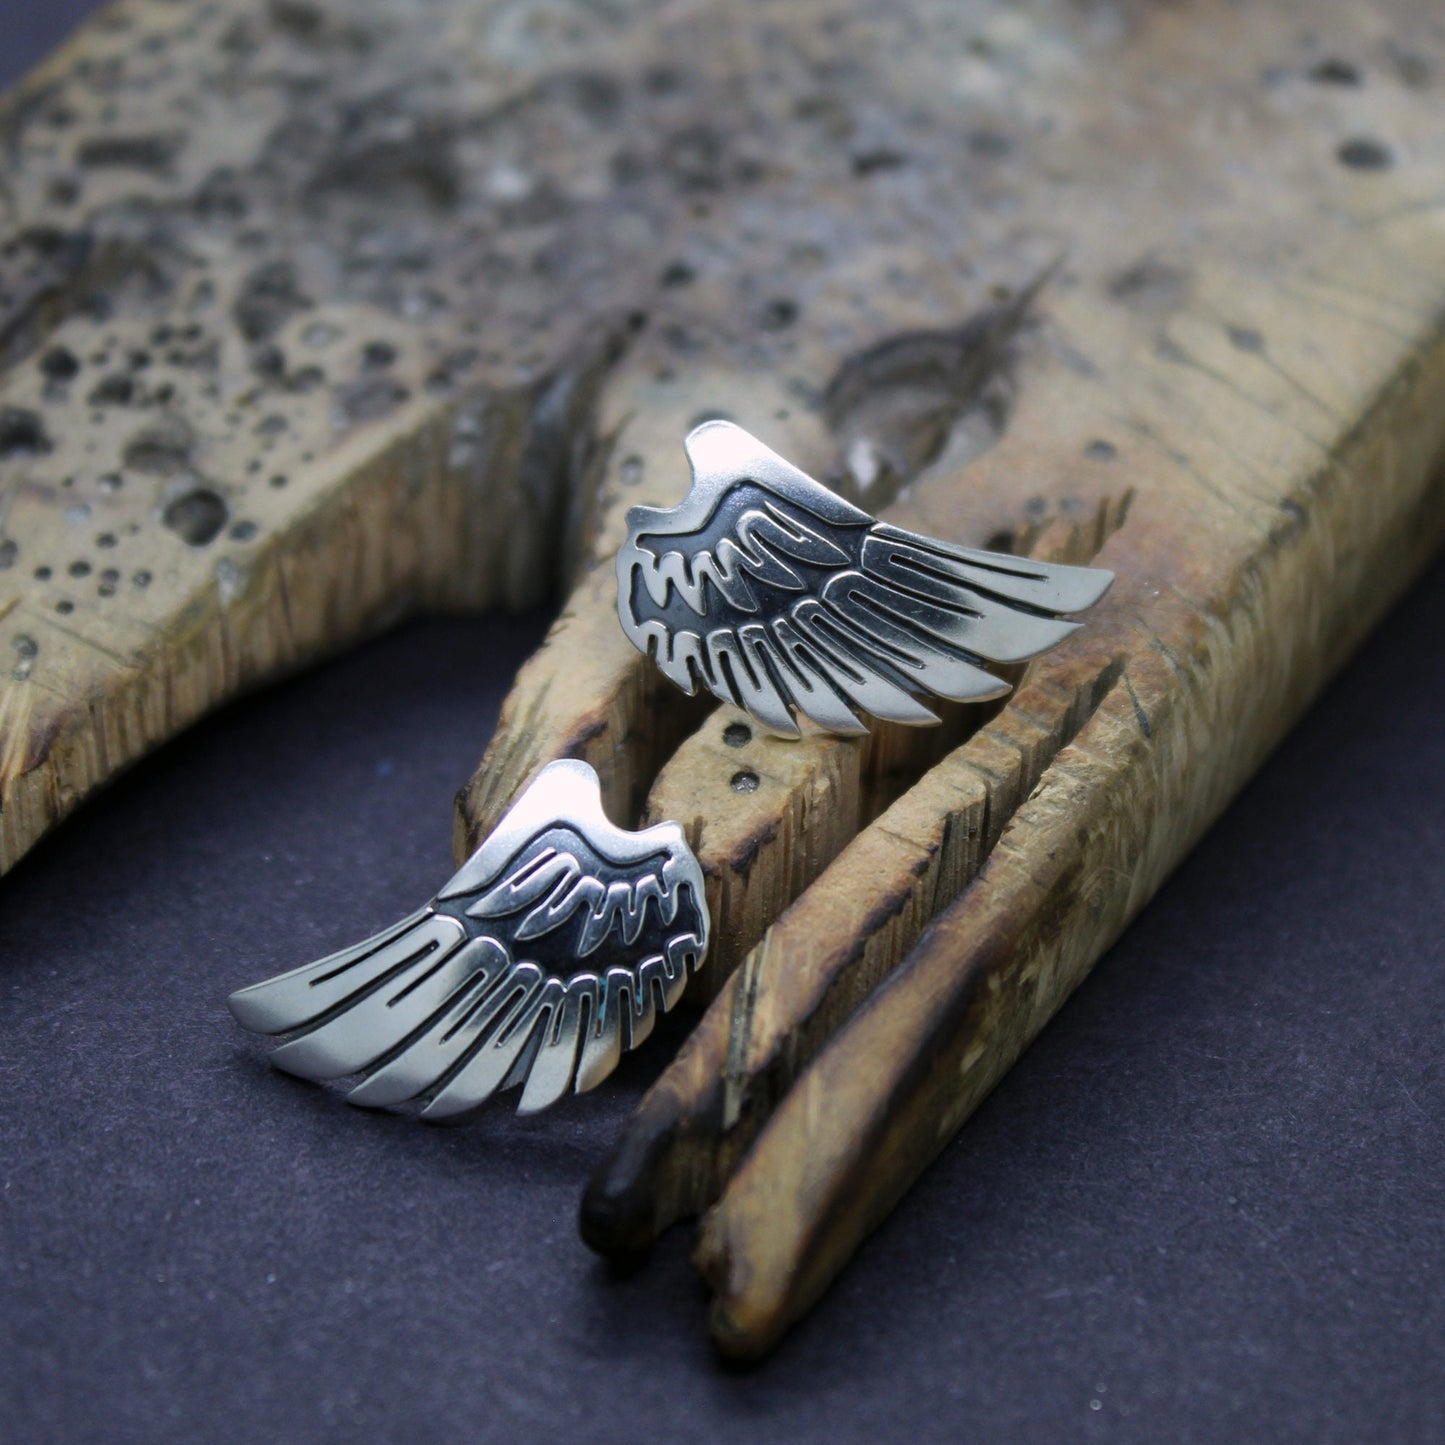 Angel wings earrings in 925 silver